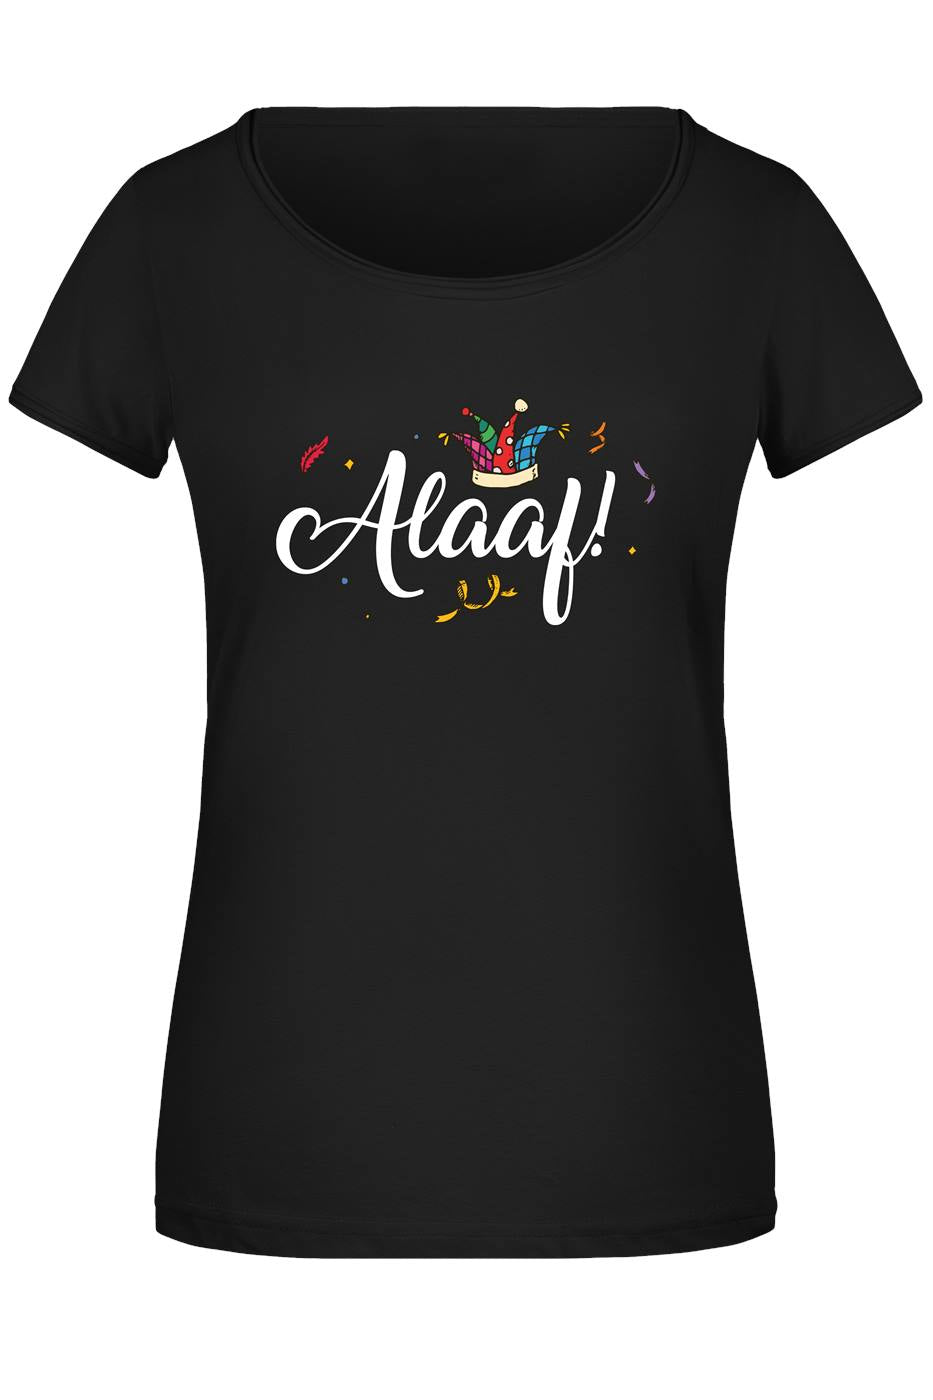 T-Shirt Damen - Alaaf!